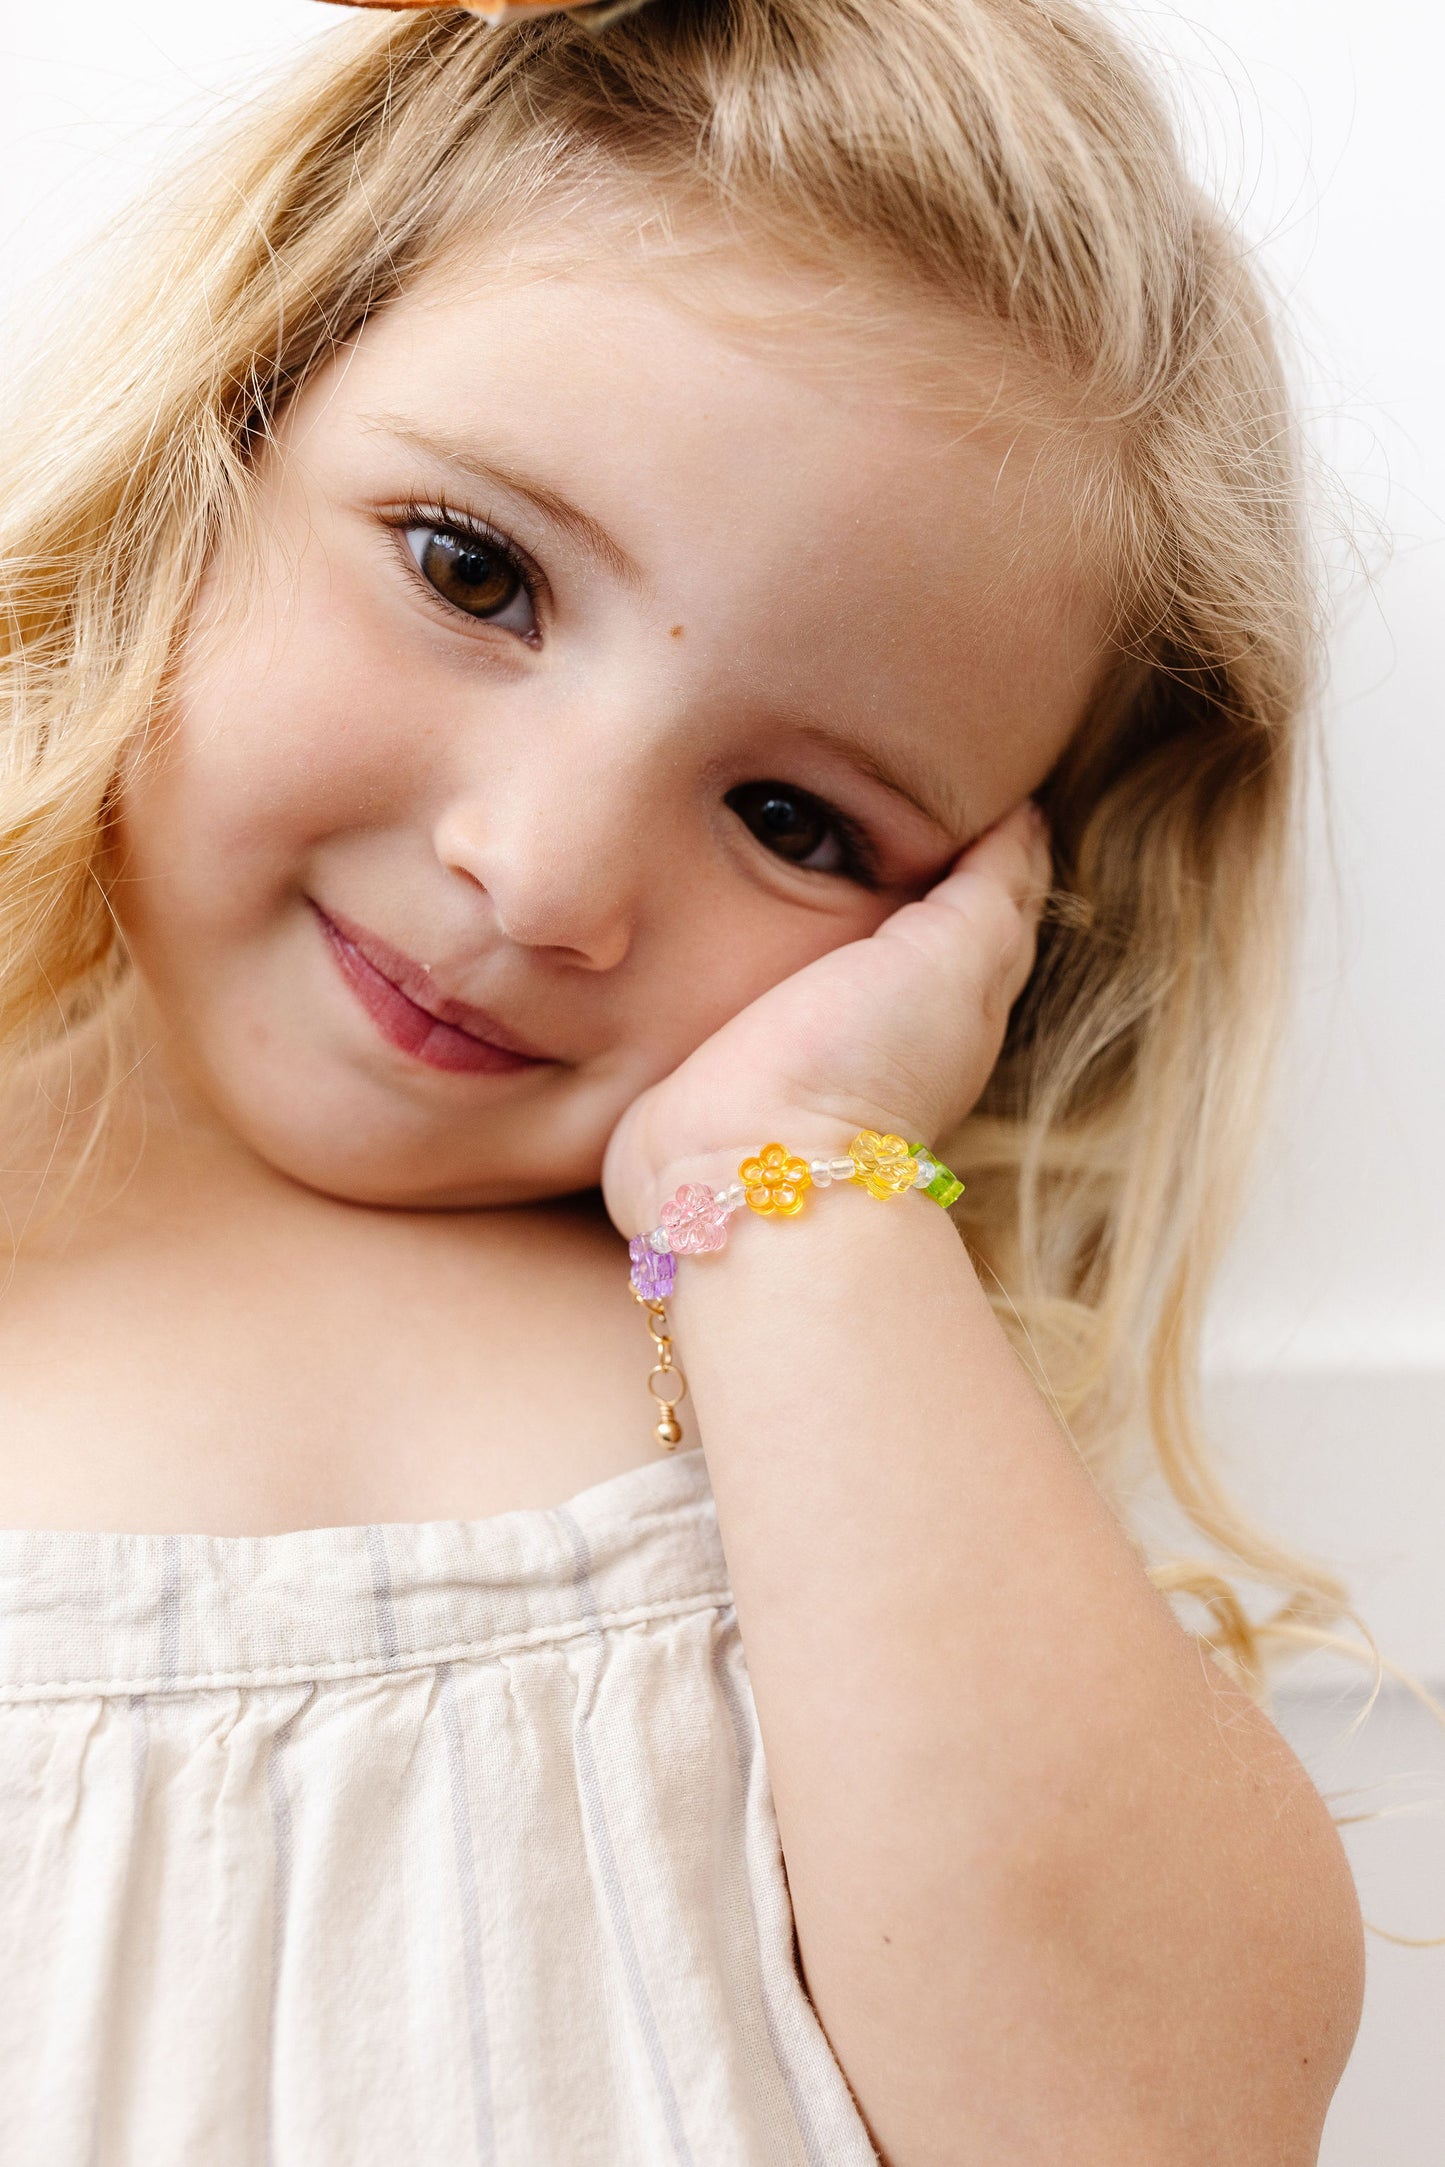 Gold Bracelet Buy Online | Babies Design Bracelet Online | Light Weight  Design Bracelet